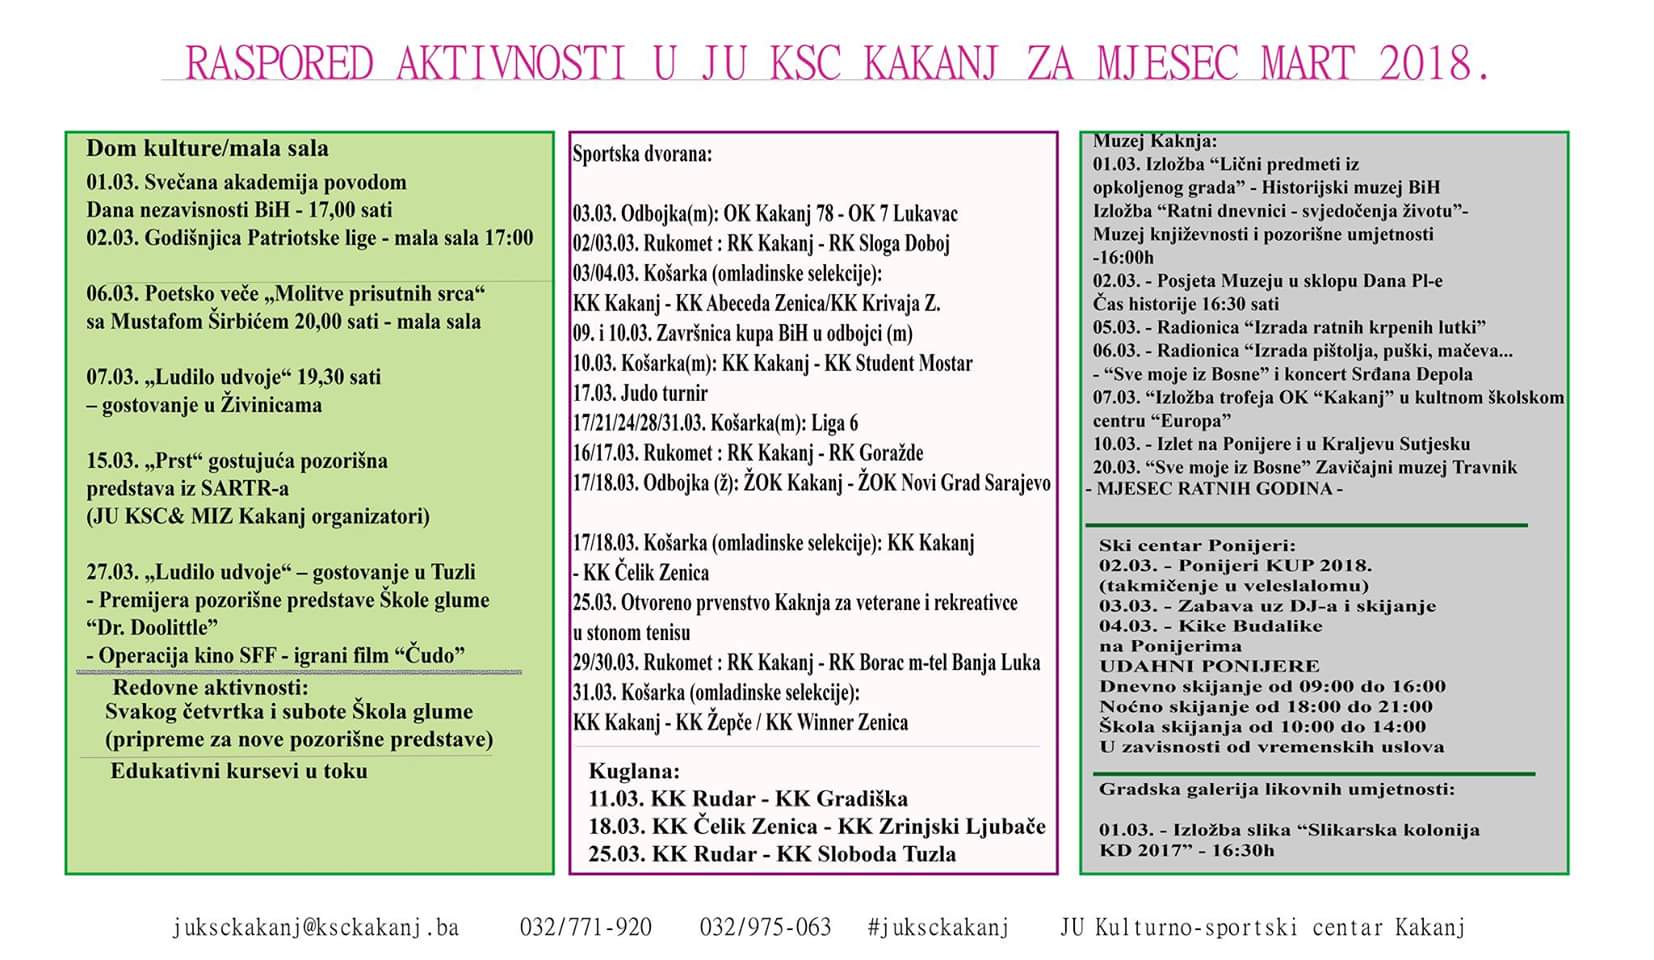 Raspored aktivnosti u JU KSC Kakanj za mjesec mart 2018. godine